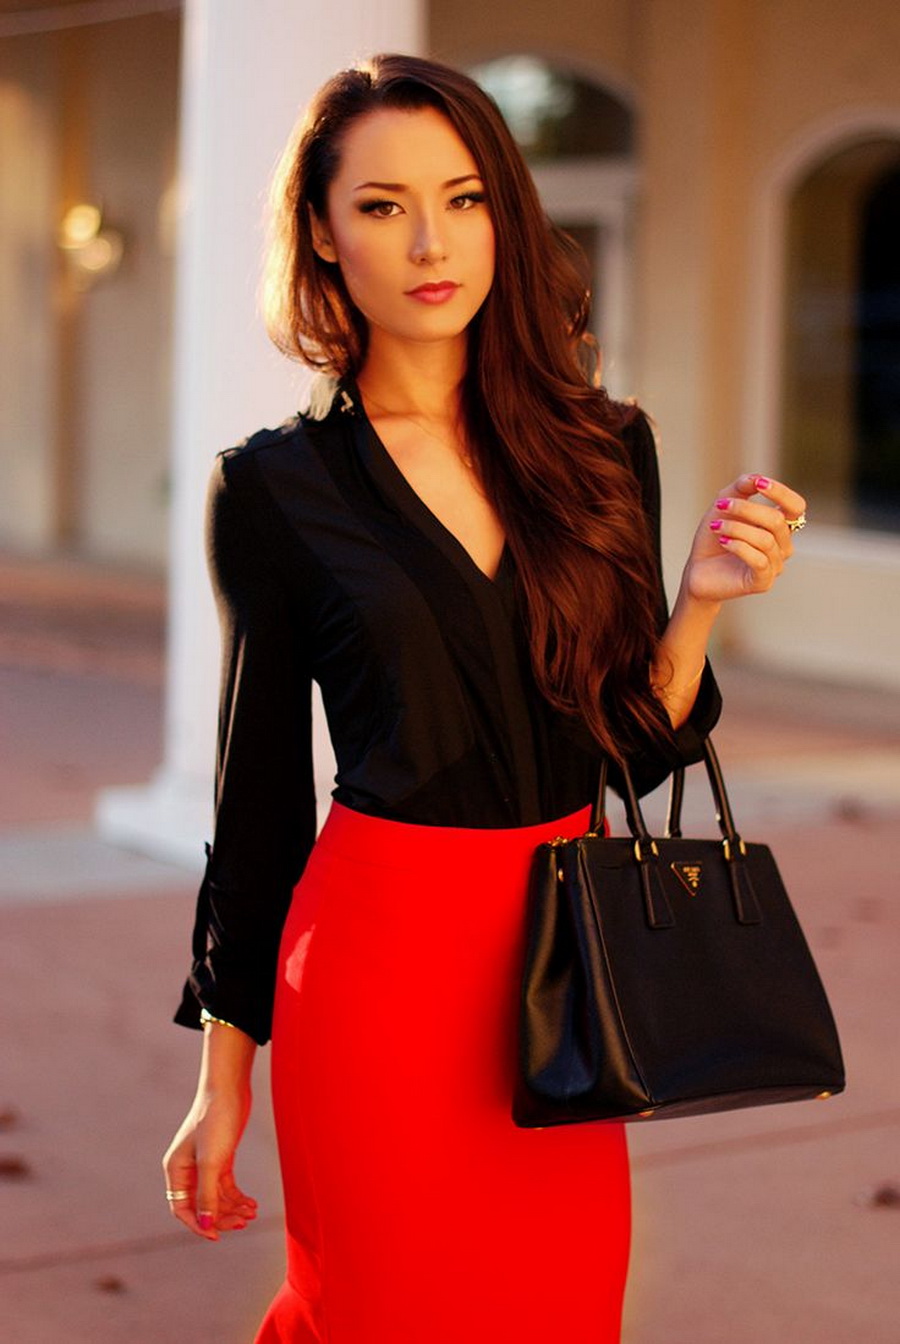 Черная кофта и черная юбка. Красная кофта и черная юбка. Образ с красной юбкой. Образ с красной юбкой карандаш. Красная юбка карандаш с черной блузкой.